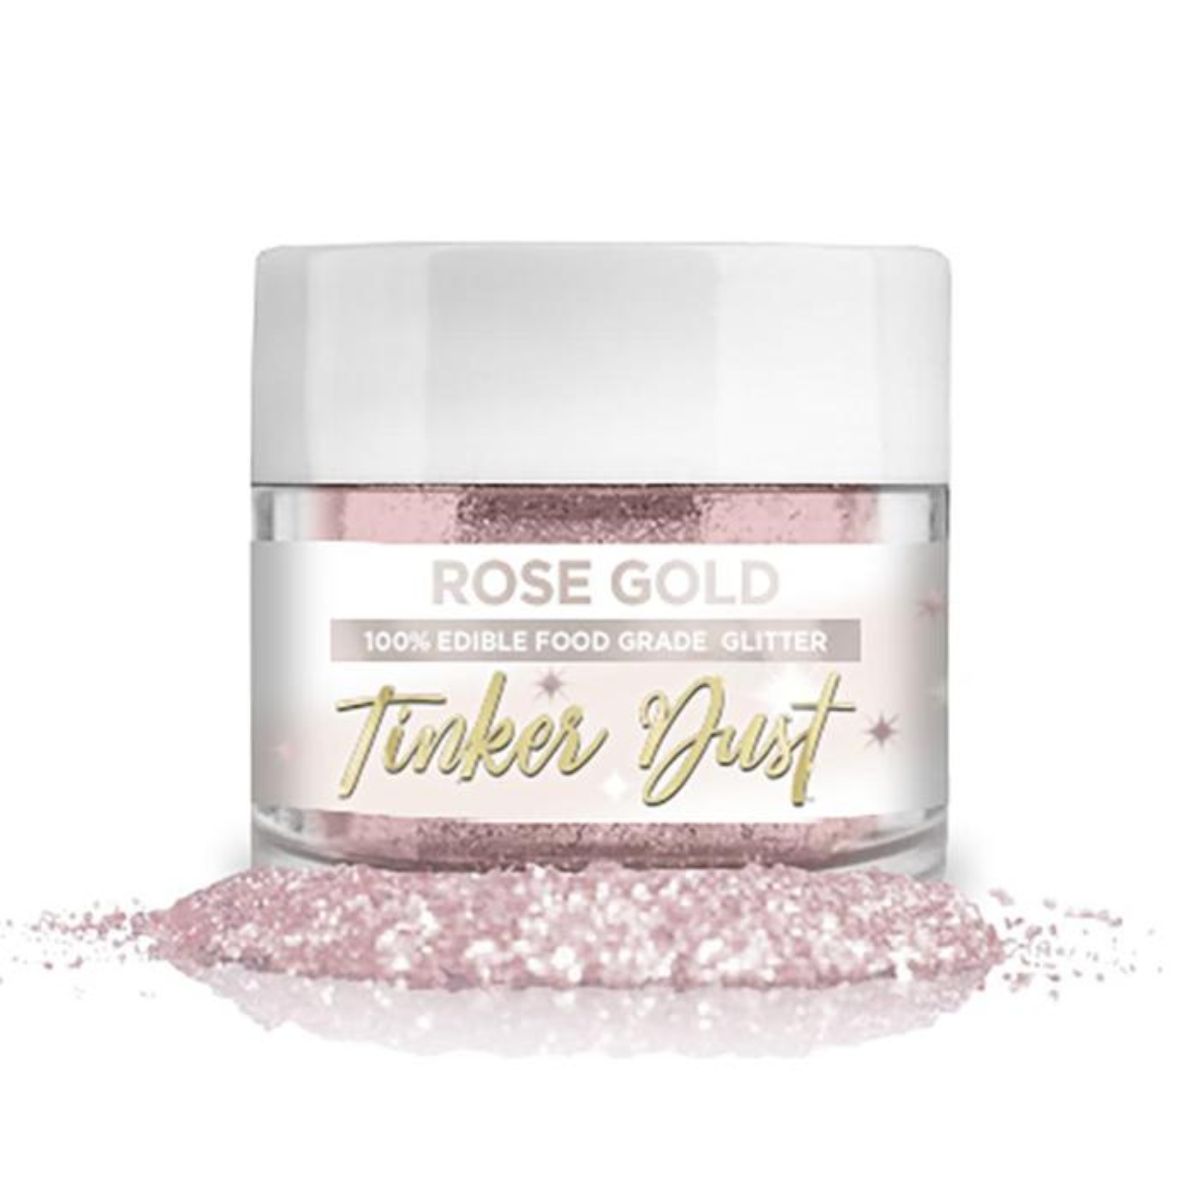 Bakell Rose Gold Tinker Dust 5g